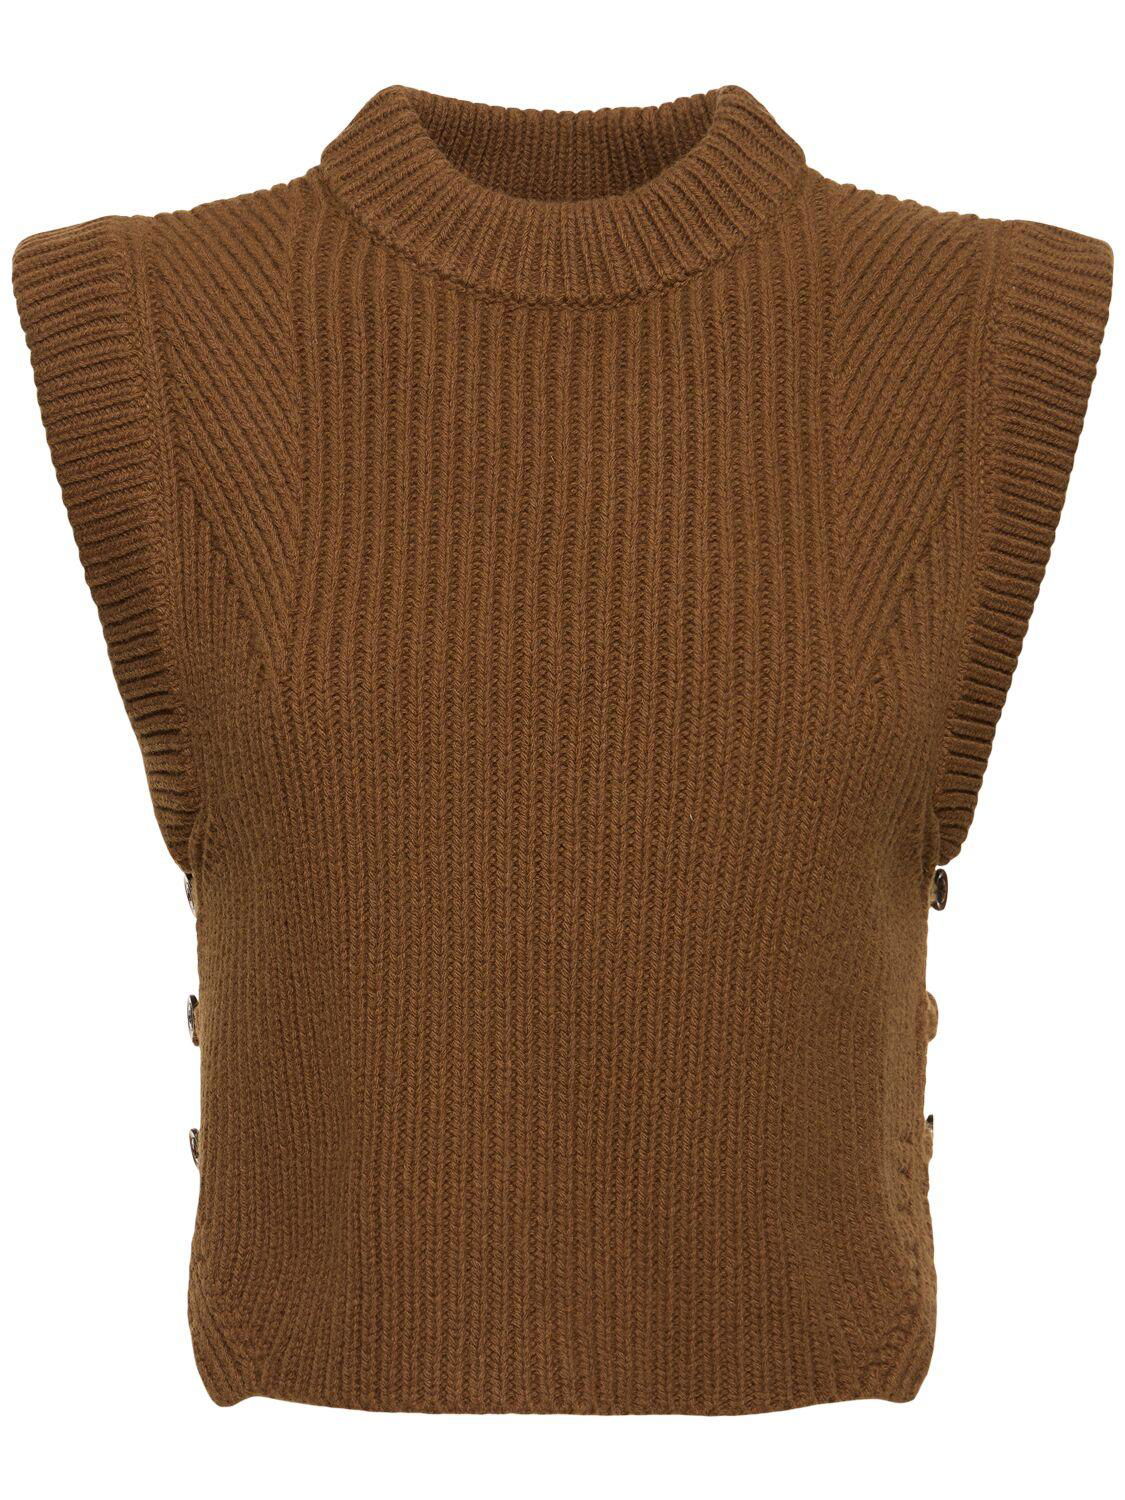 Alky Knit Wool Vest by SOEUR